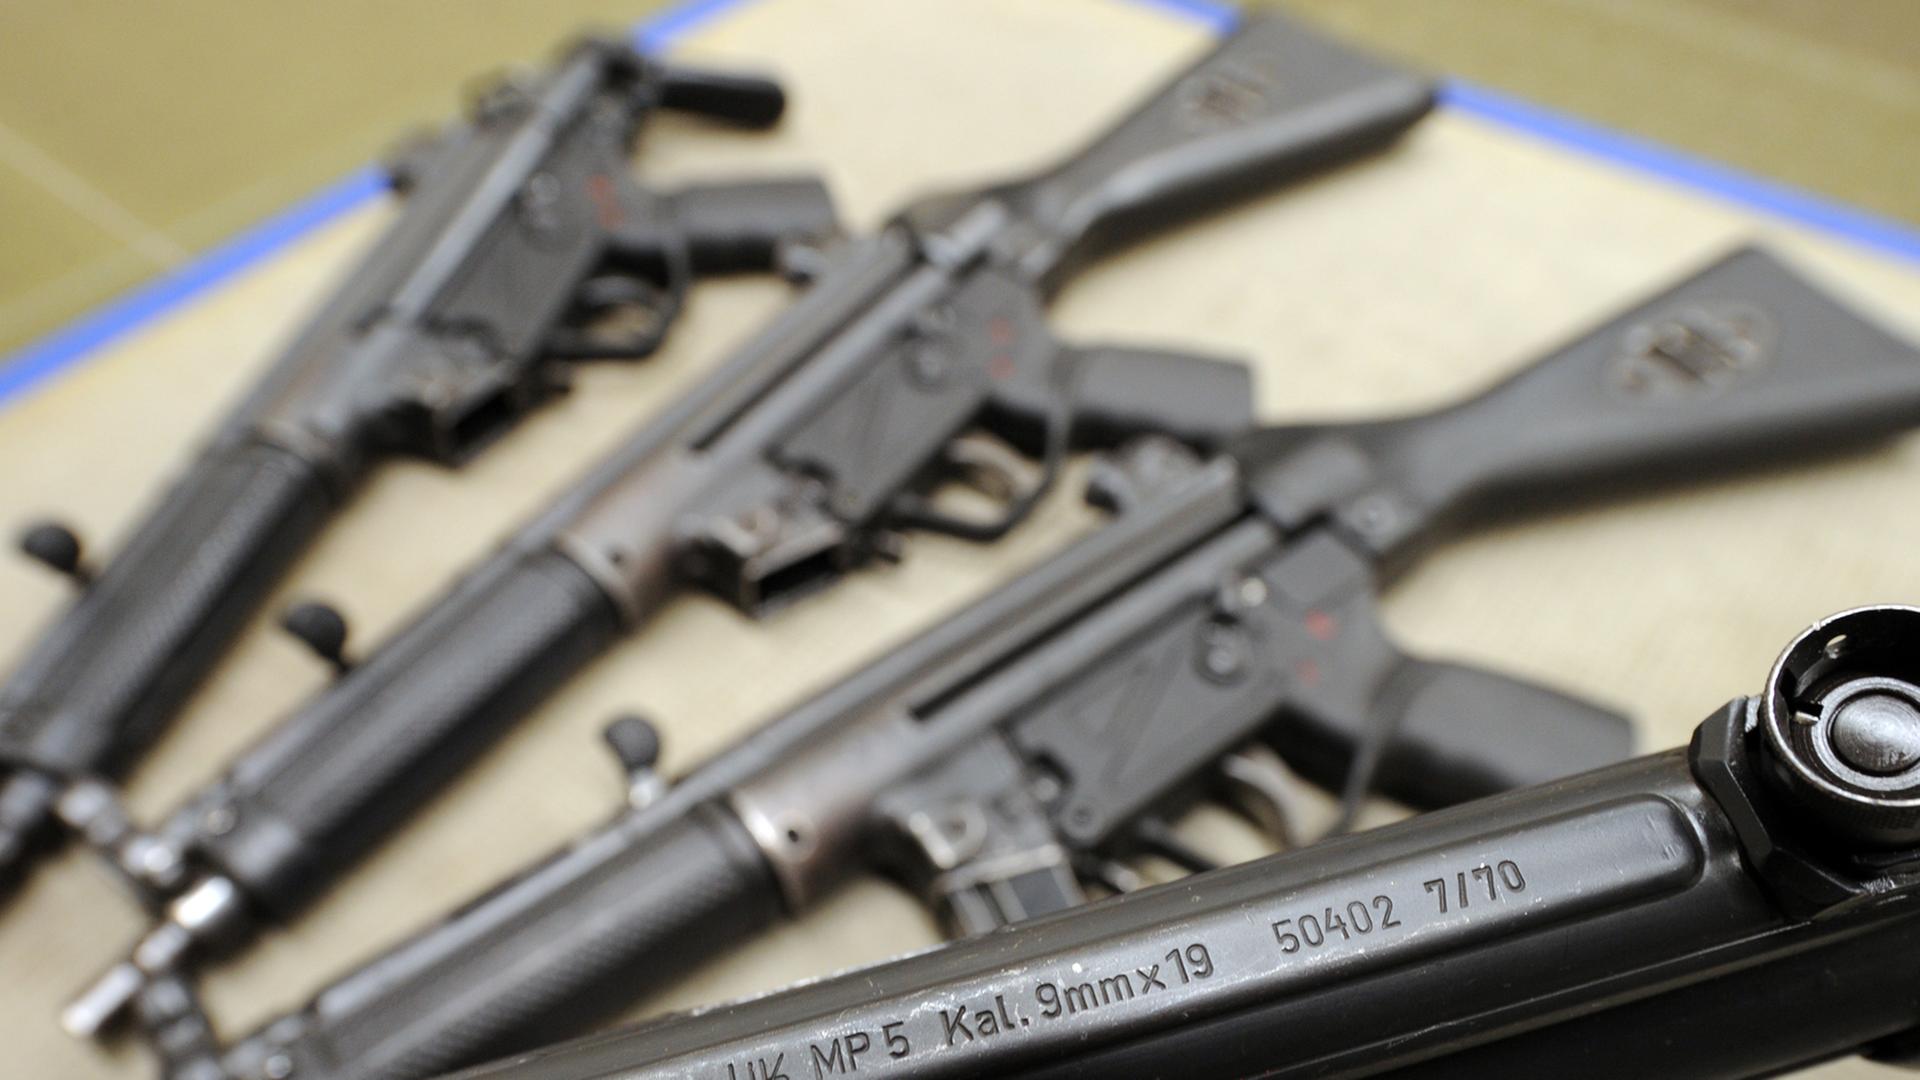 Maschinenpistolen des Typs MP5 des deutschen Waffenherstellers Heckler & Koch sind am Montag (15.03.2010) im Schießstand der Polizei in Freiburg zu sehen.